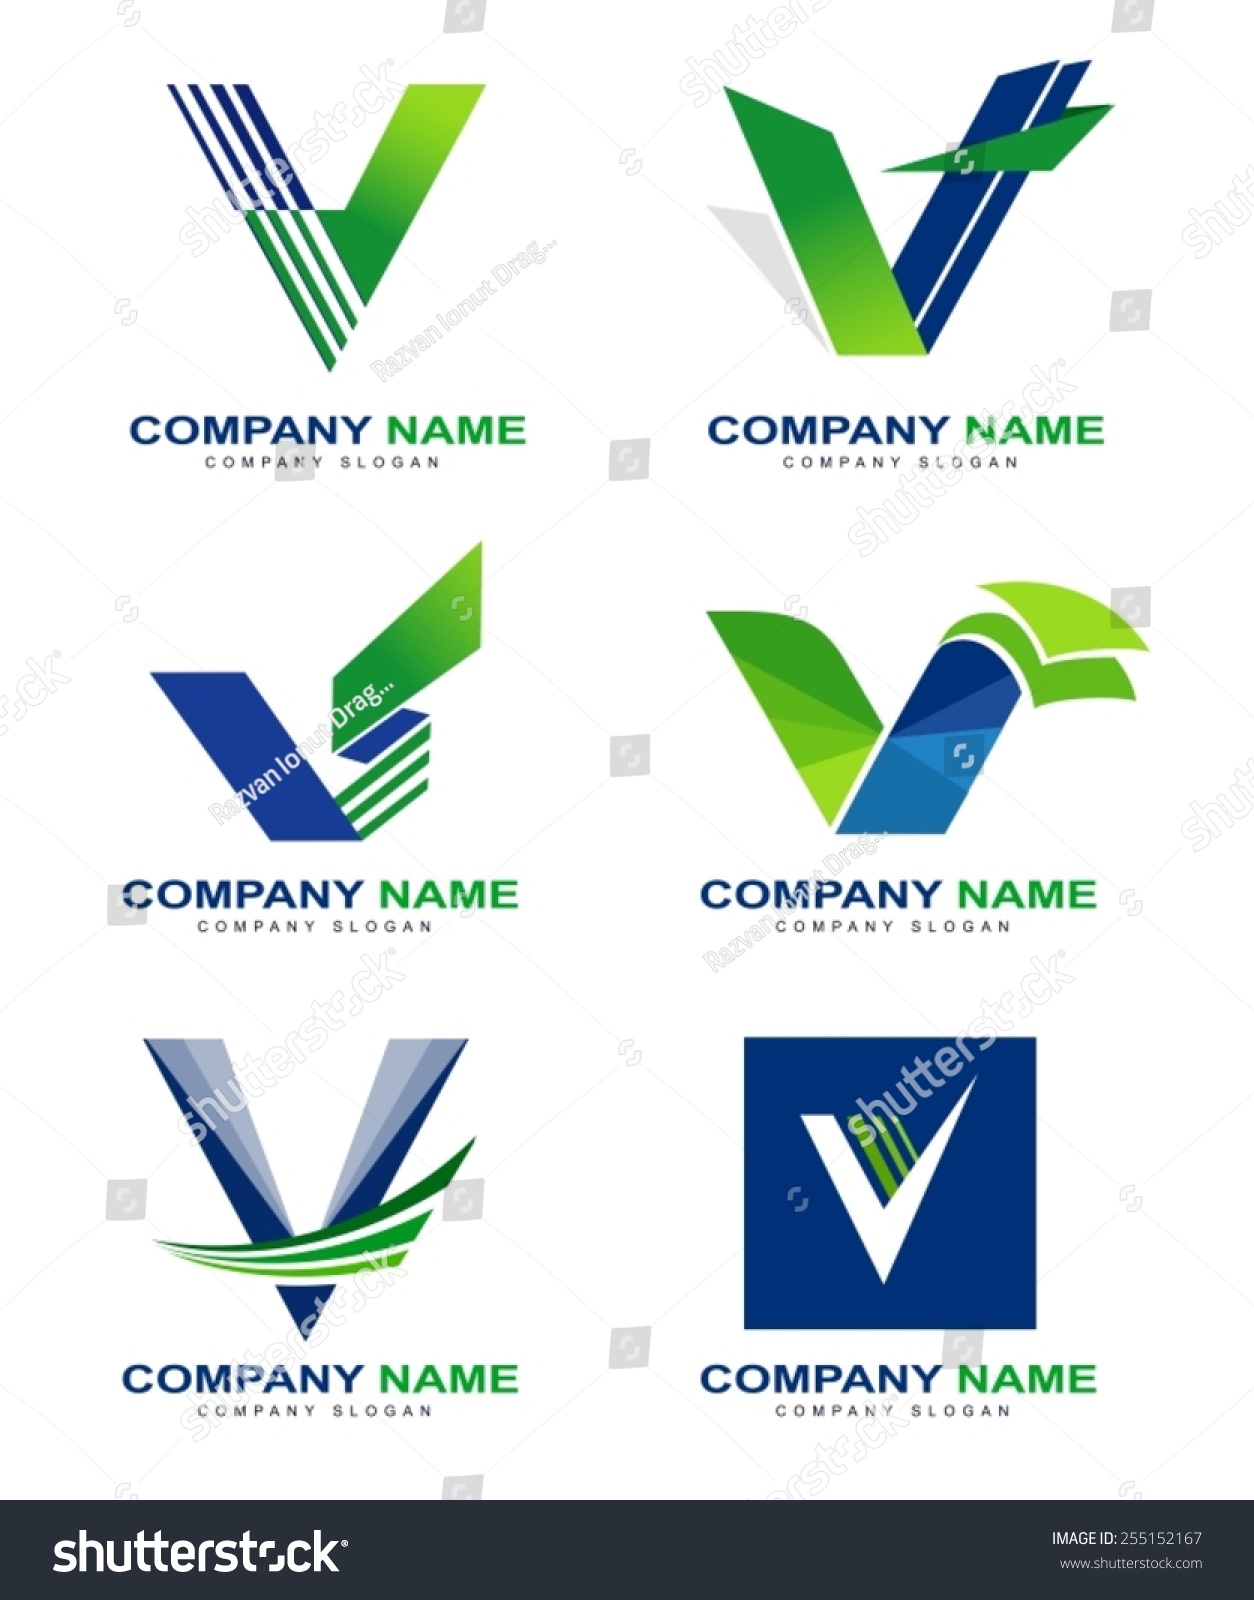 選択した画像 blue v logo name 298026-Blue and yellow v logo company name